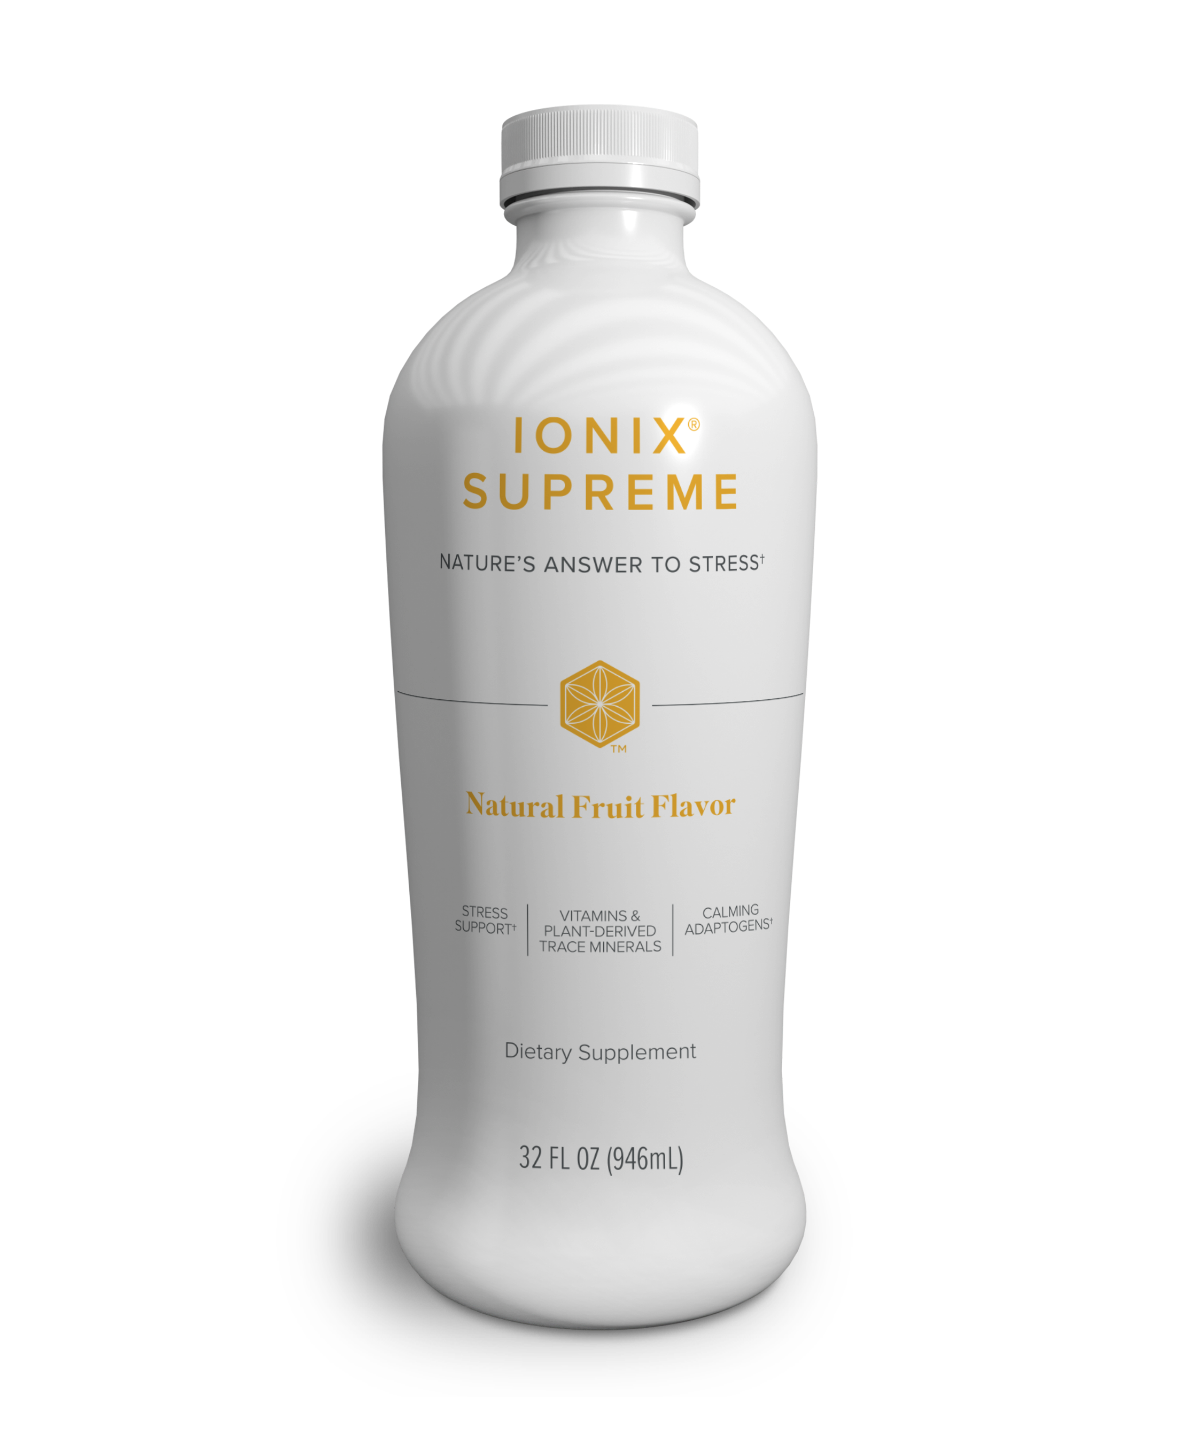 Ionix® Supreme Natural Fruit Flavor Drink